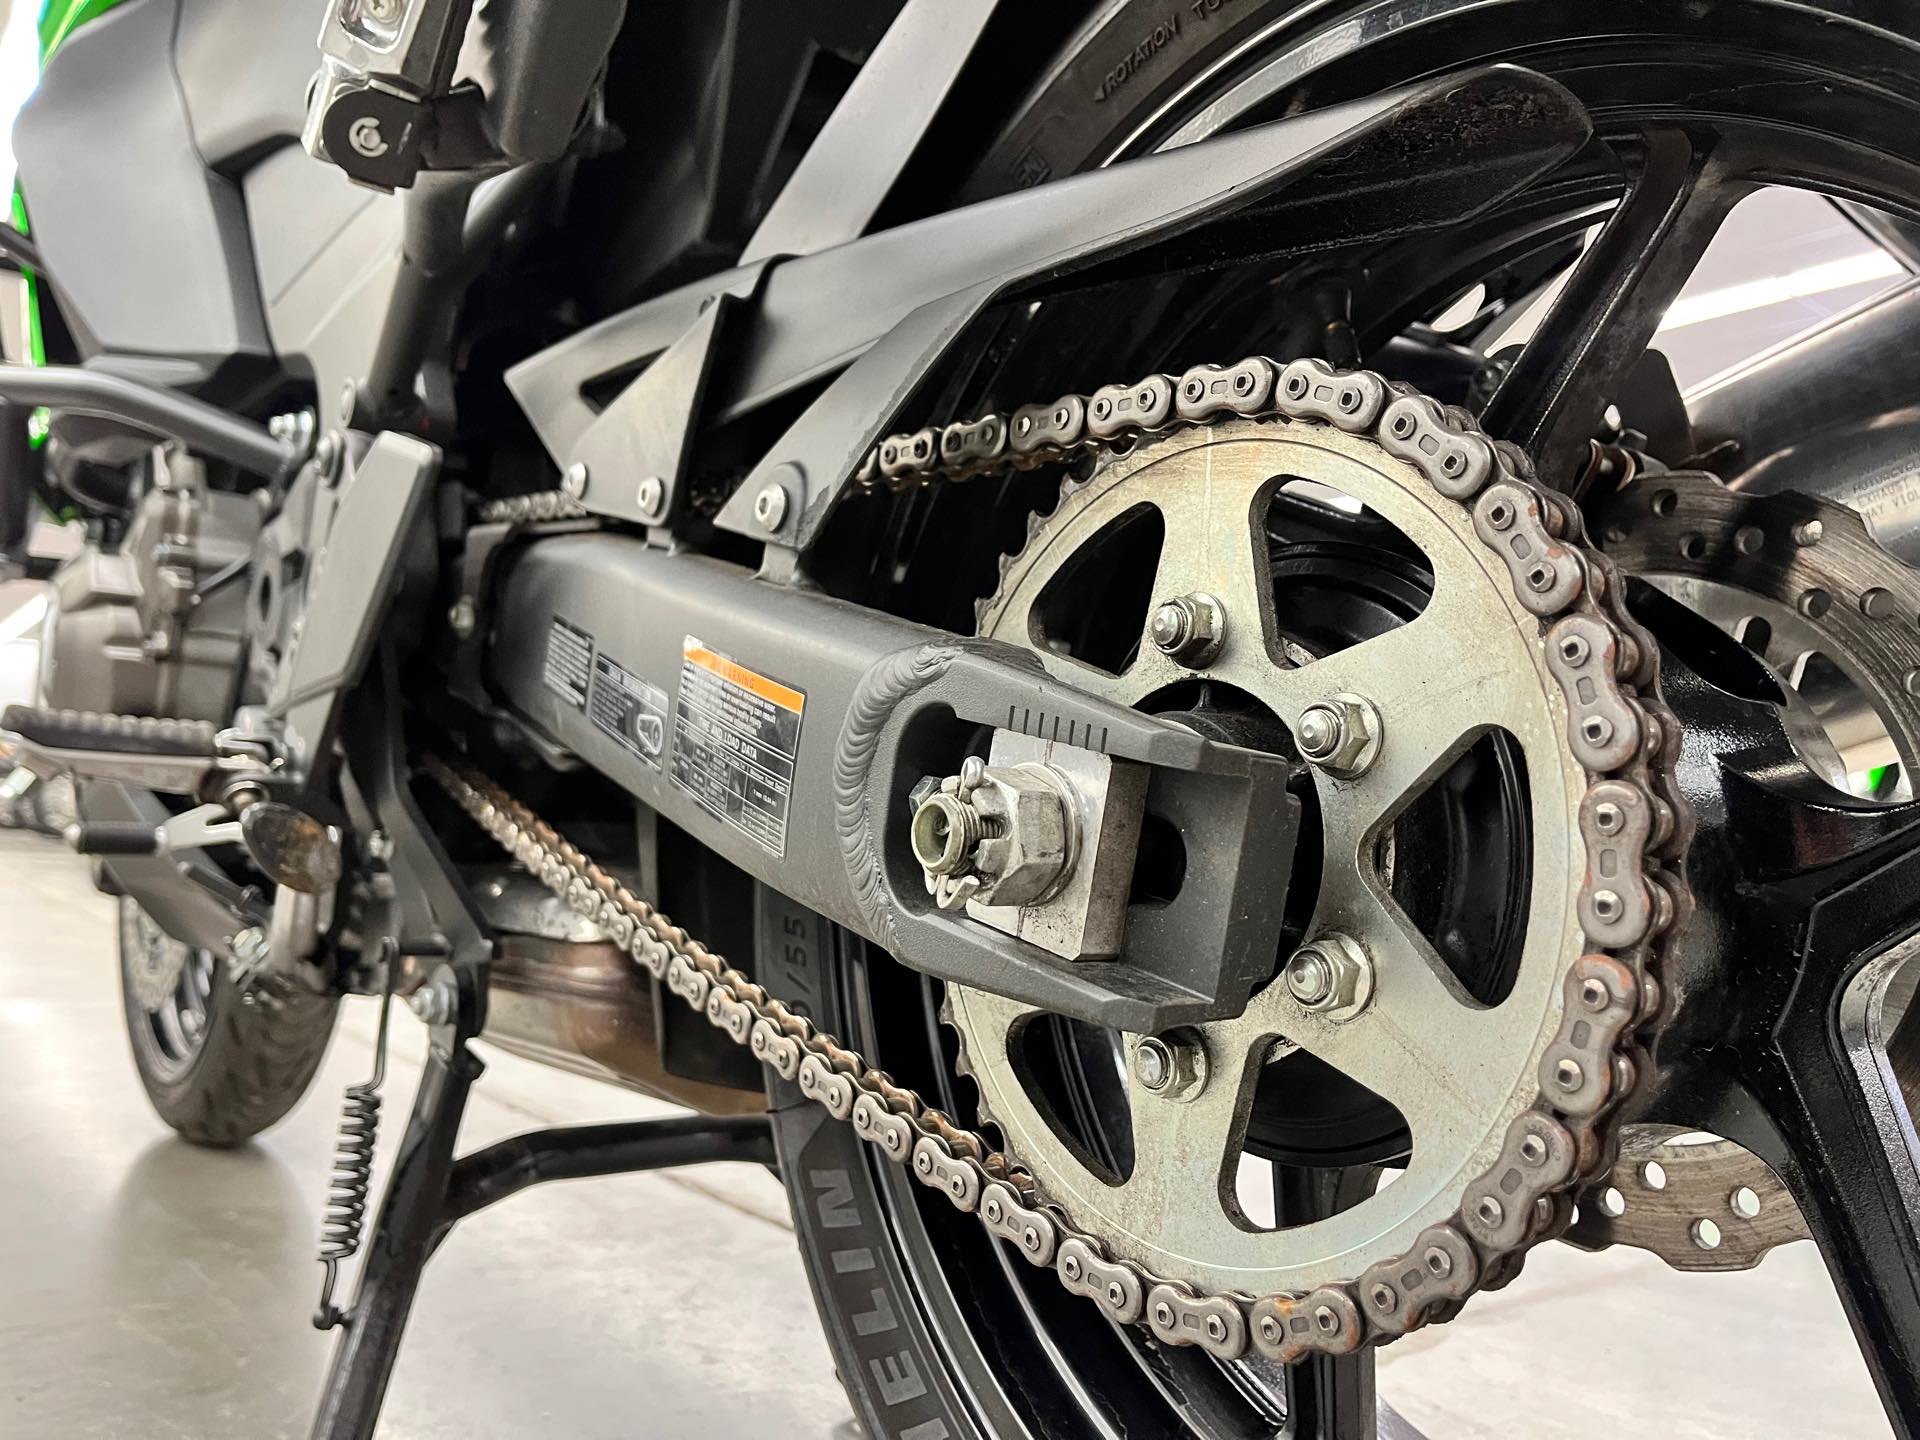 2016 Kawasaki Versys 1000 LT at Aces Motorcycles - Denver